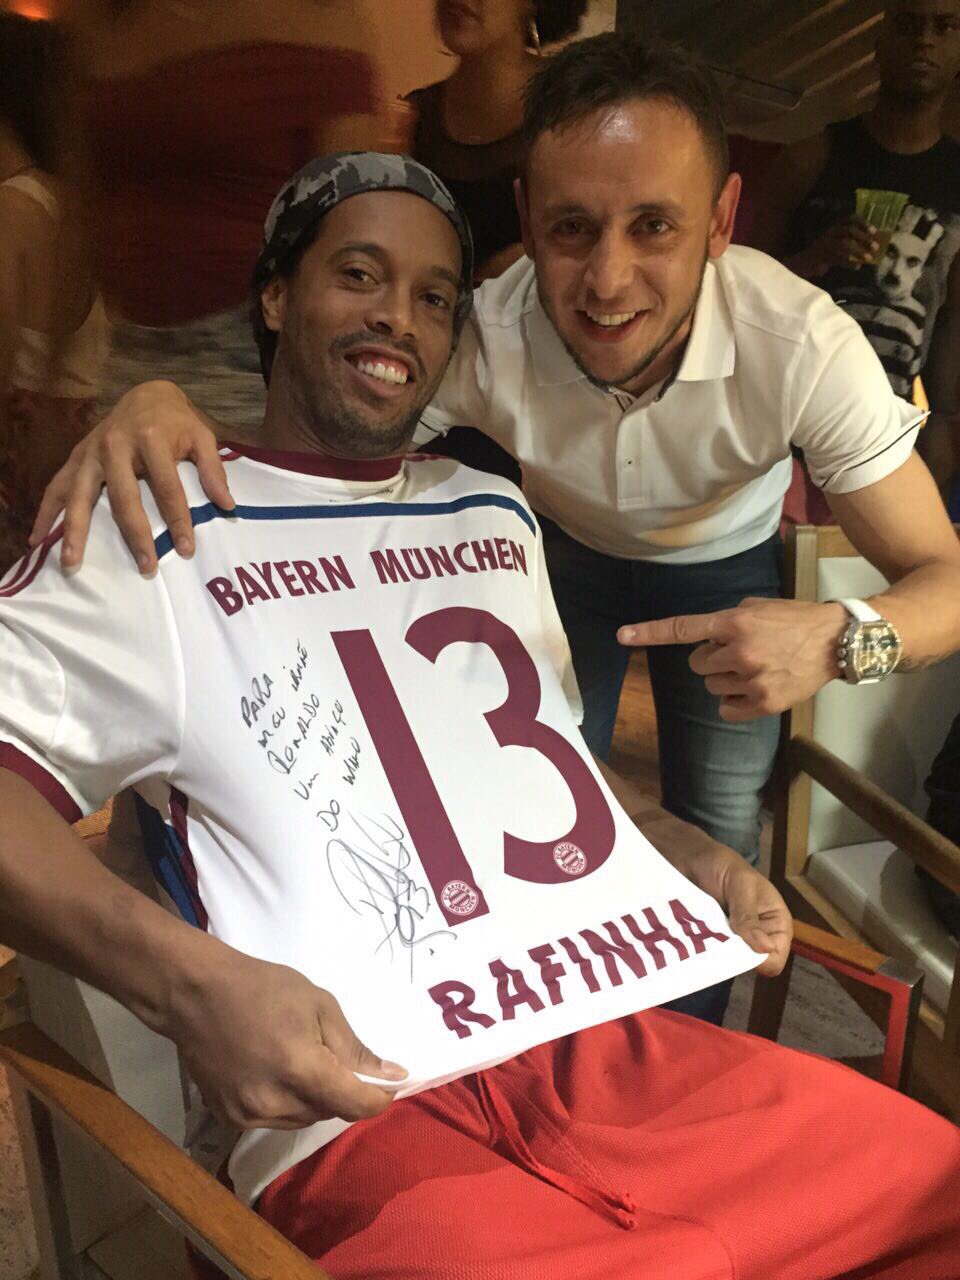 Рафинья поздравил великого кудесника мяча Роналдиньо с днём рождения!